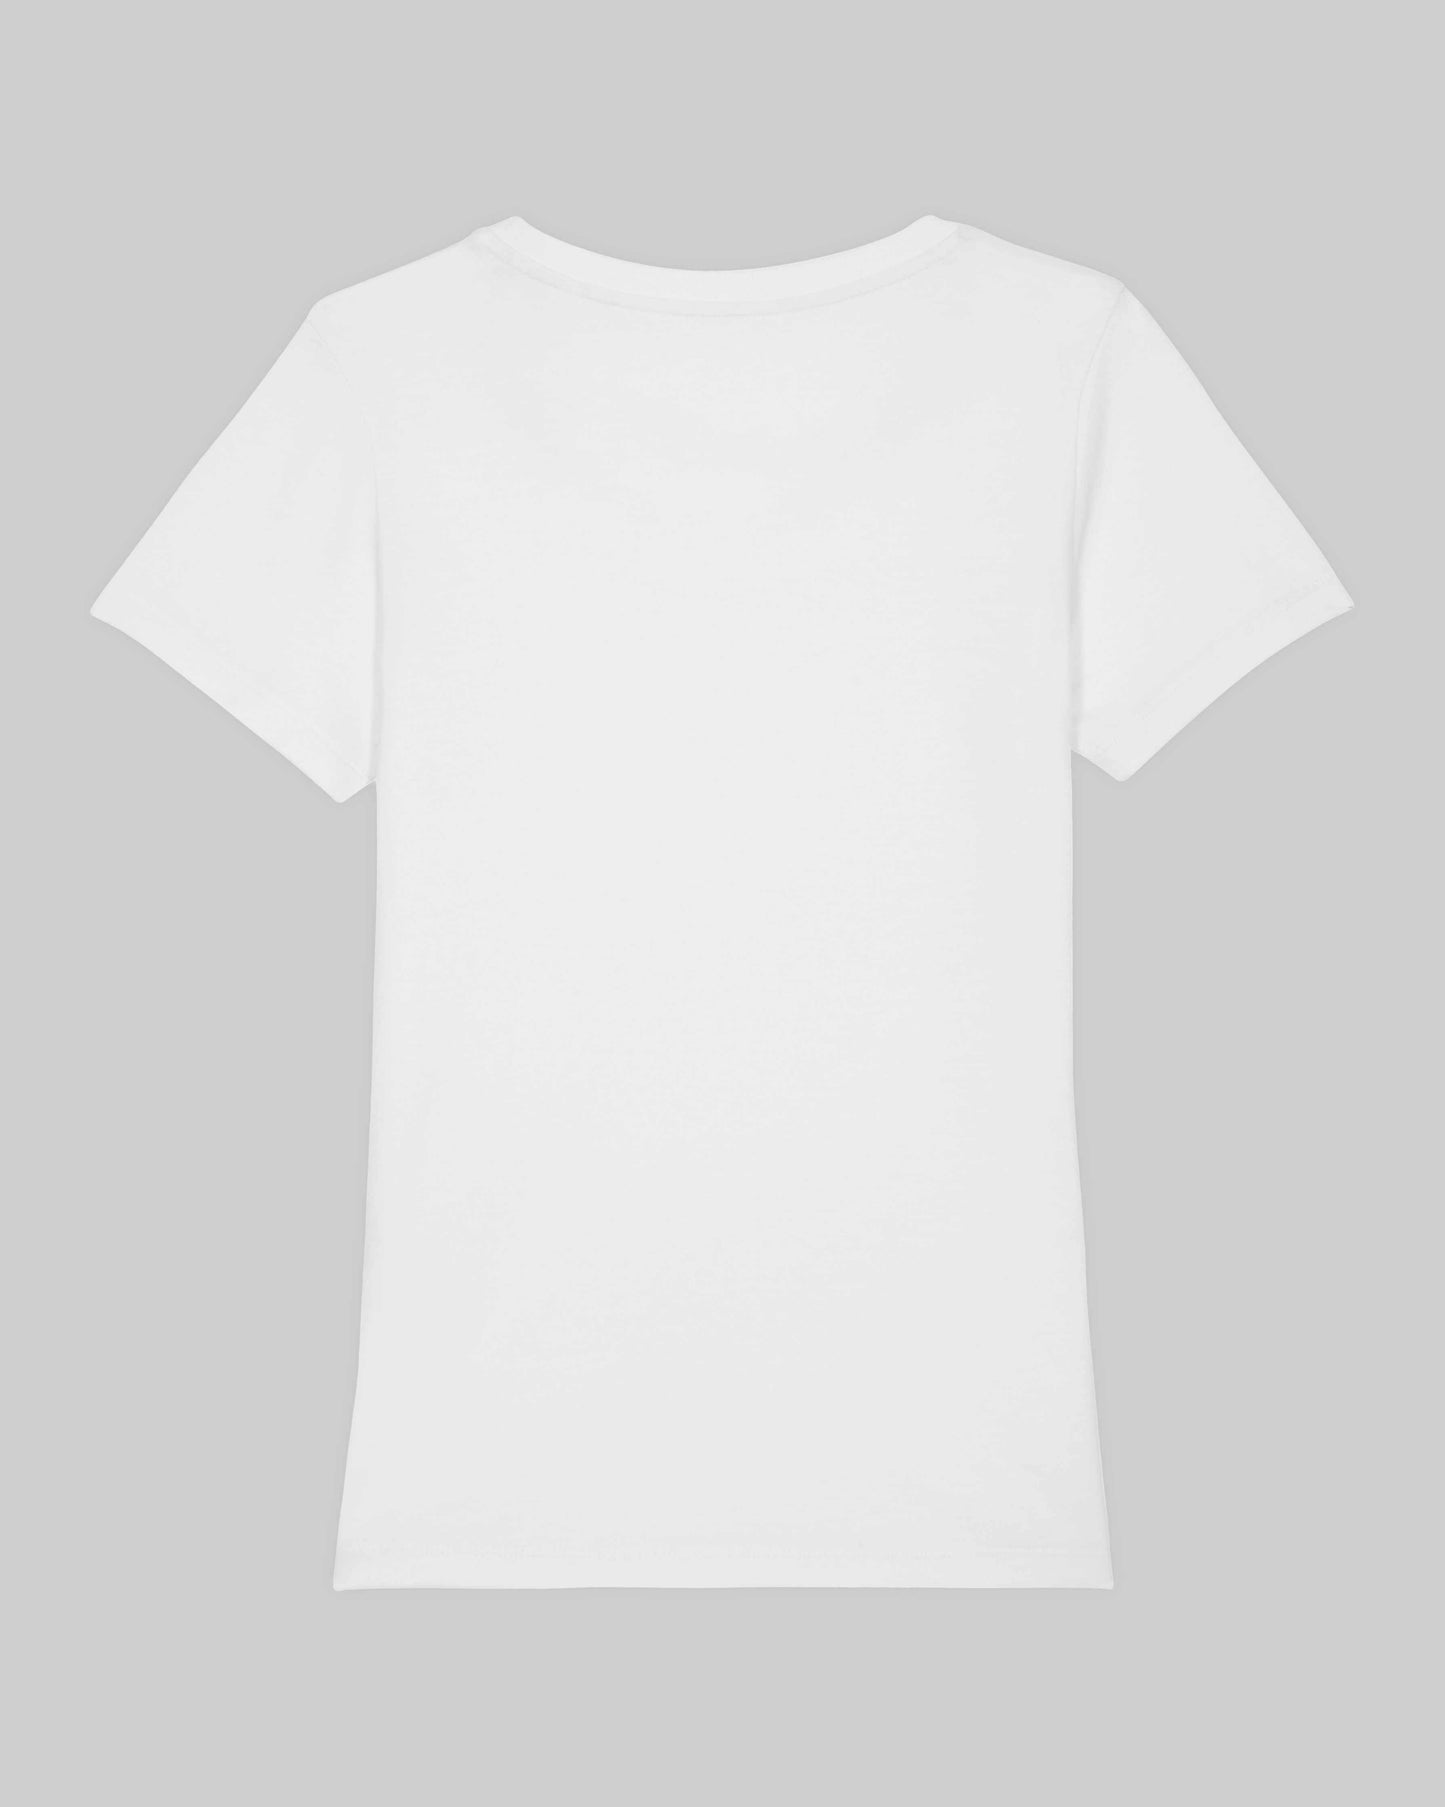 EINHORST® Organic Shirt tailliert in "Weiß" mit dem Motiv "proud Regenbogen" in der Kombination schwarzer Regenbogen mit schwarzer Schrift, Bild von Shirt von hinten